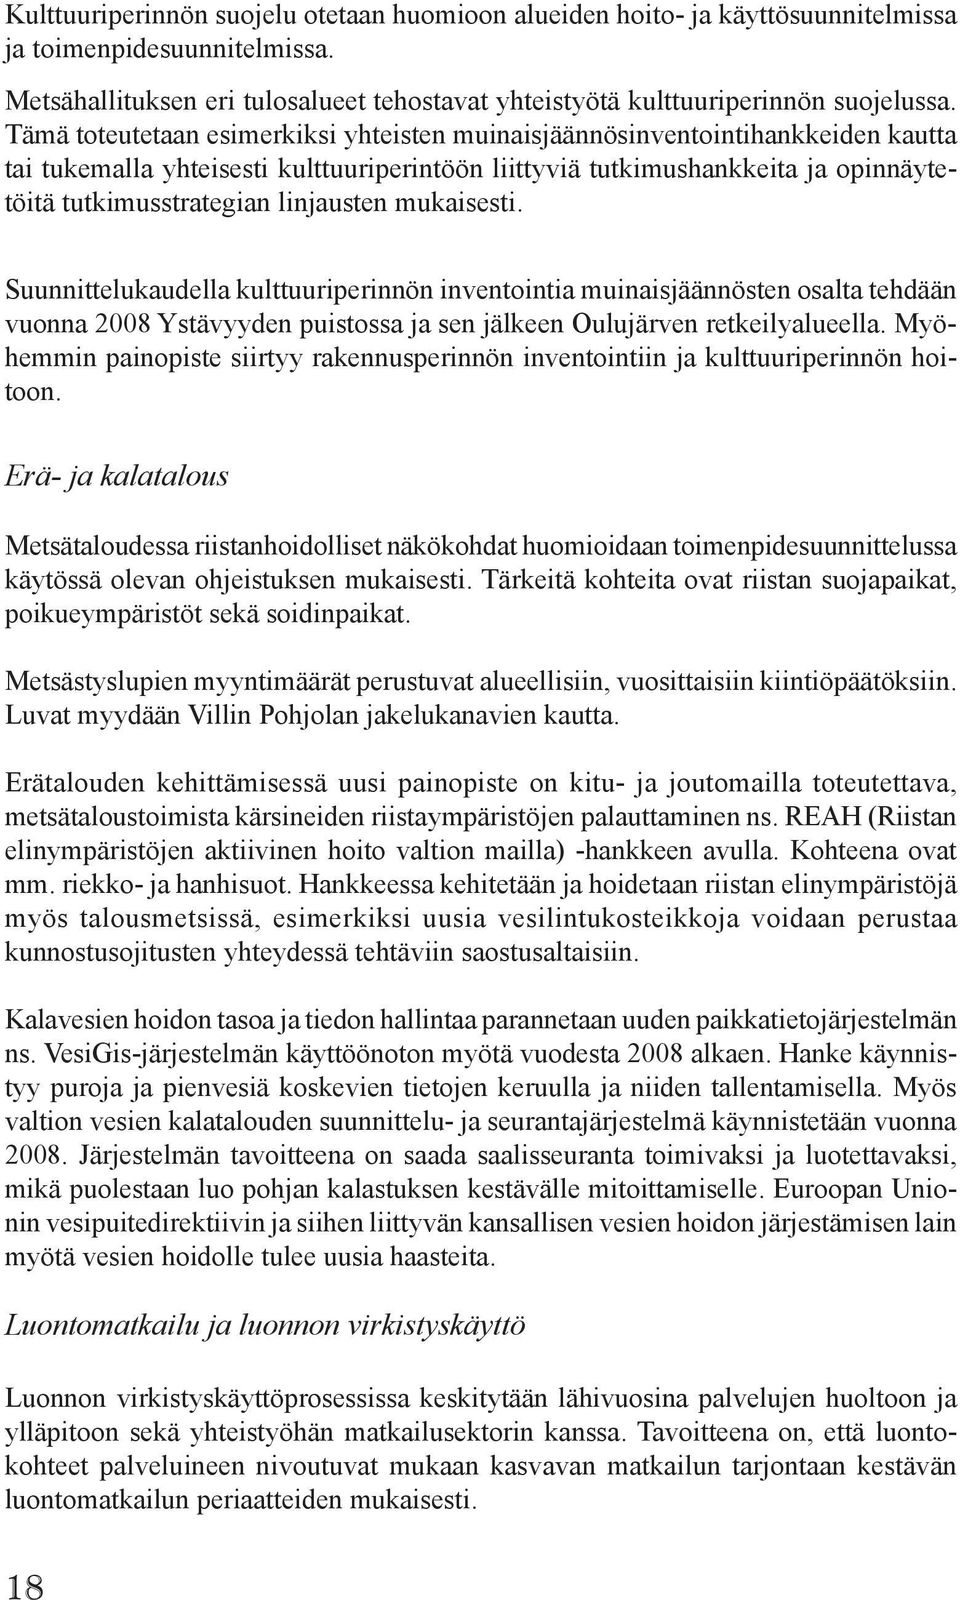 linjausten mukaisesti. Suunnittelukaudella kulttuuriperinnön inventointia muinaisjäännösten osalta tehdään vuonna 2008 Ystävyyden puistossa ja sen jälkeen Oulujärven retkeilyalueella.